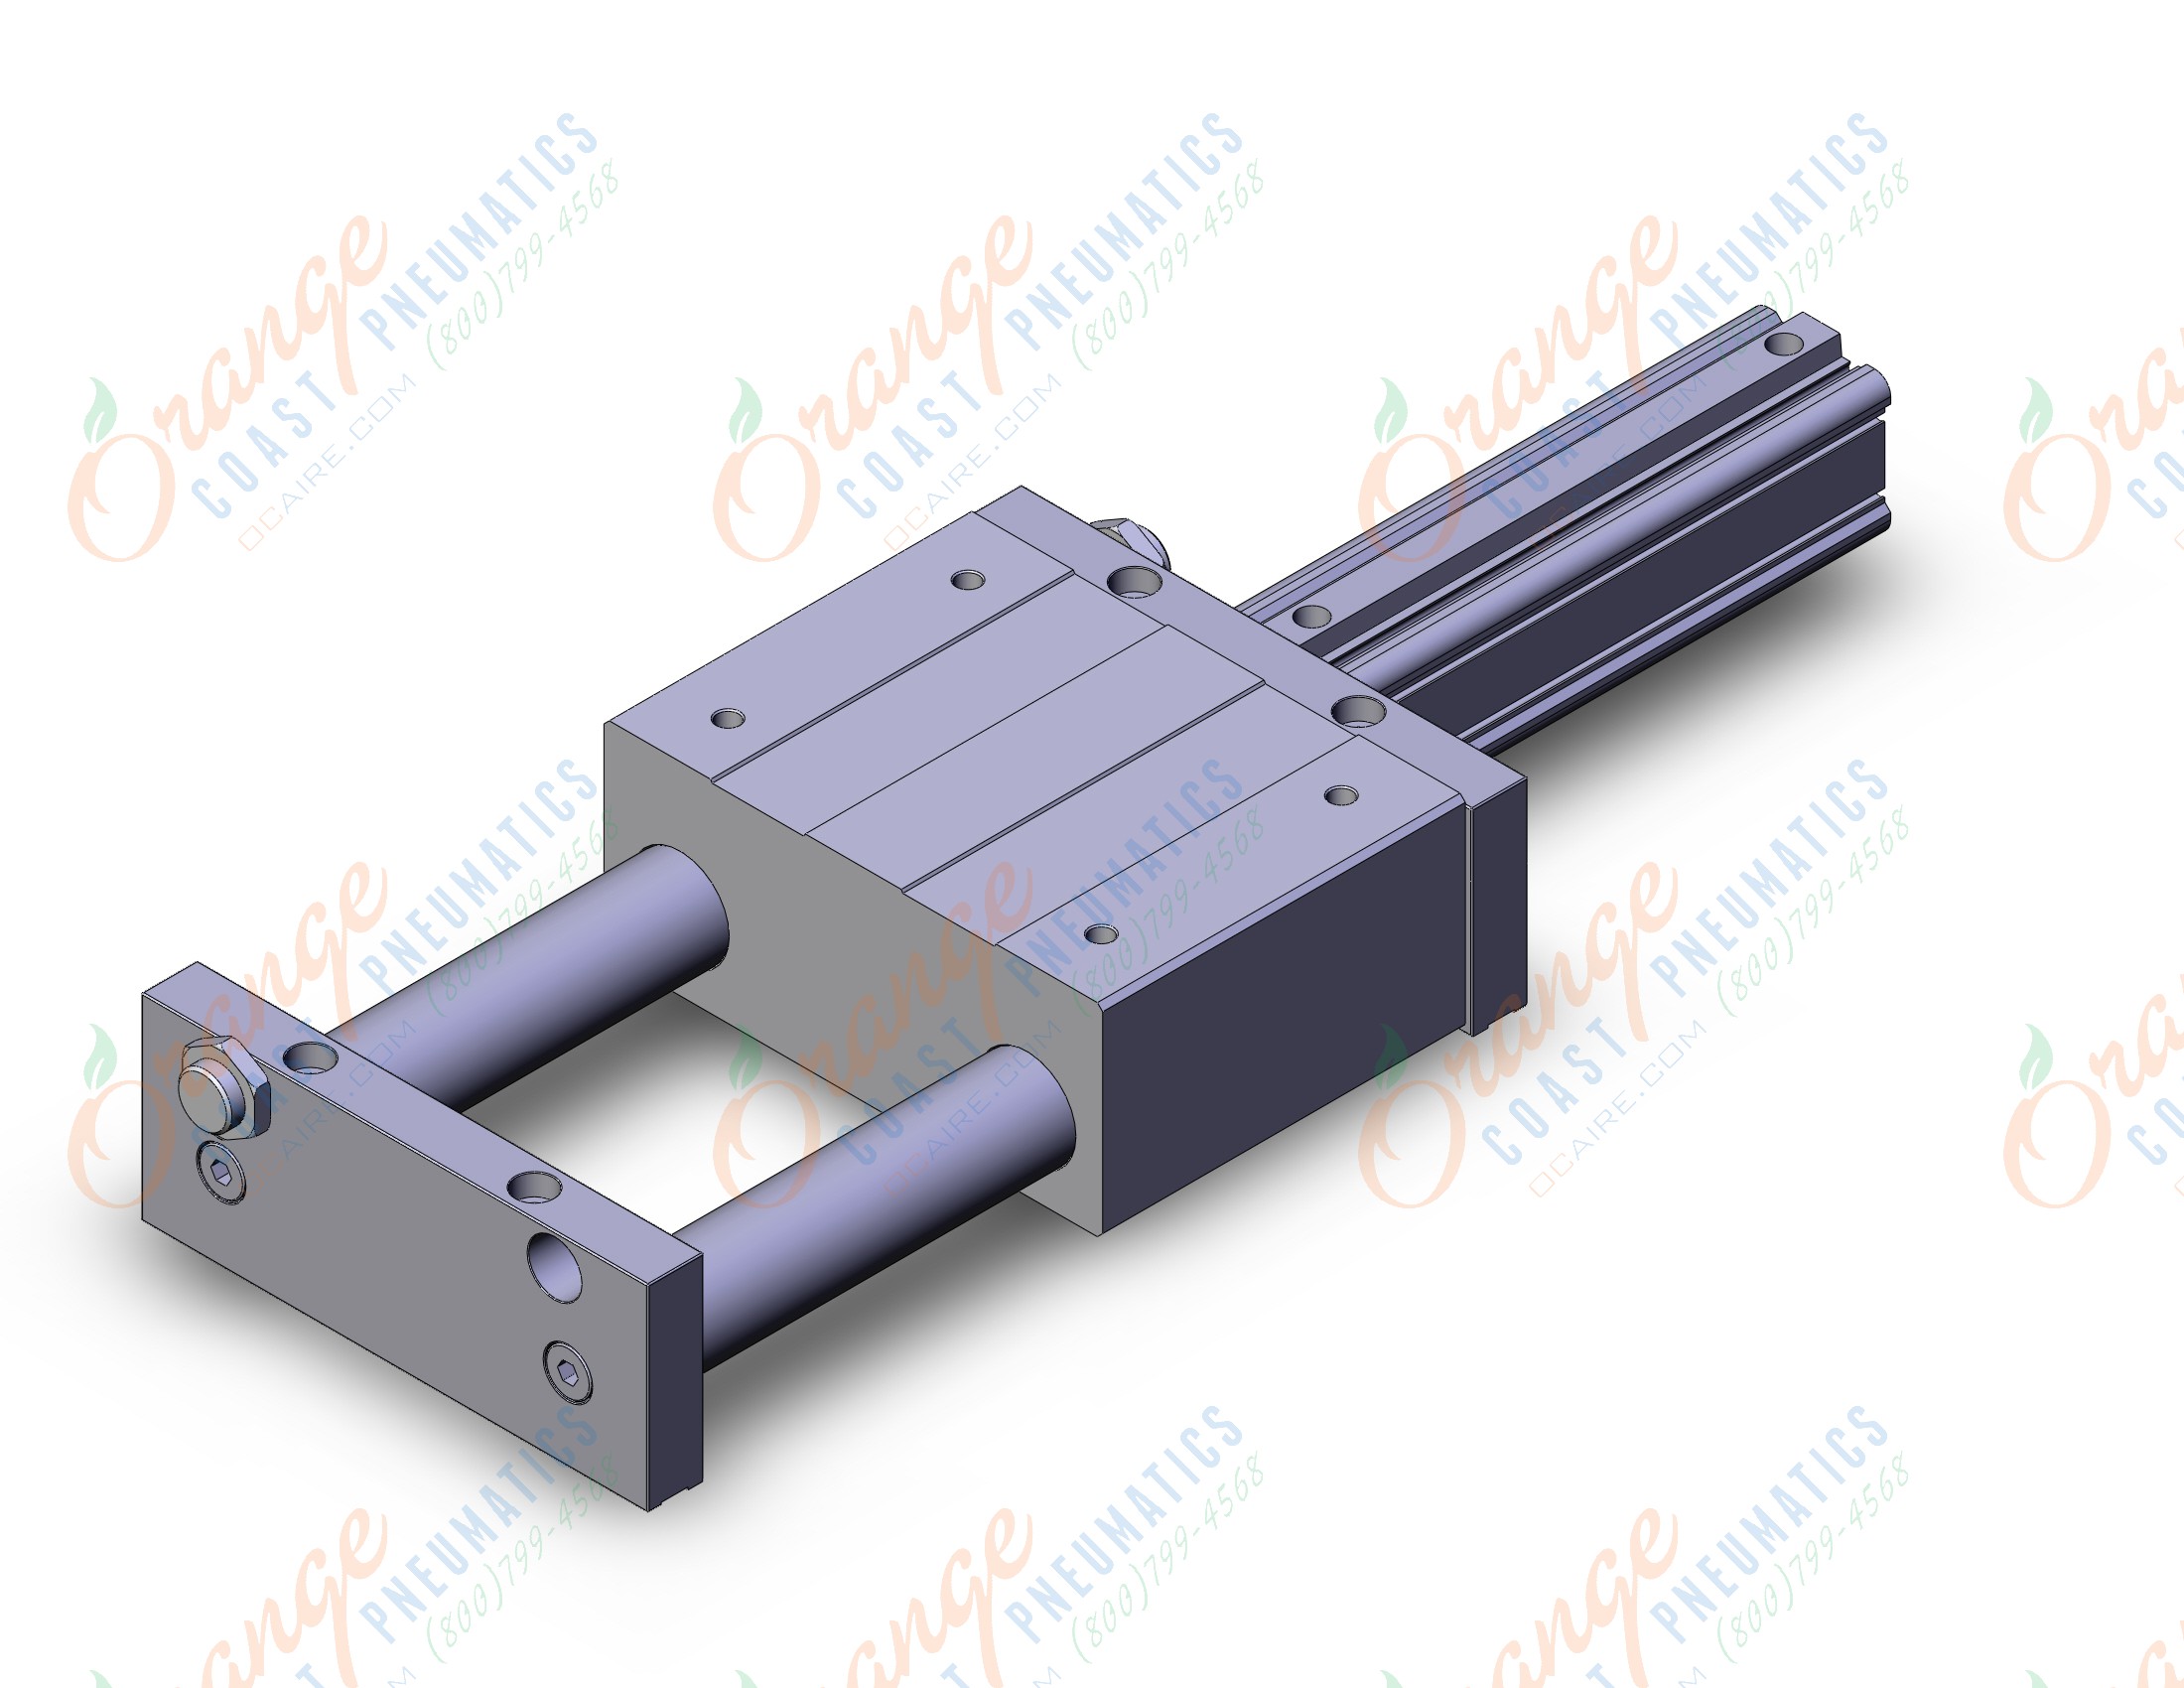 SMC CXTM40TN-150 40mm cxt slide bearing, CXT PLATFORM CYLINDER